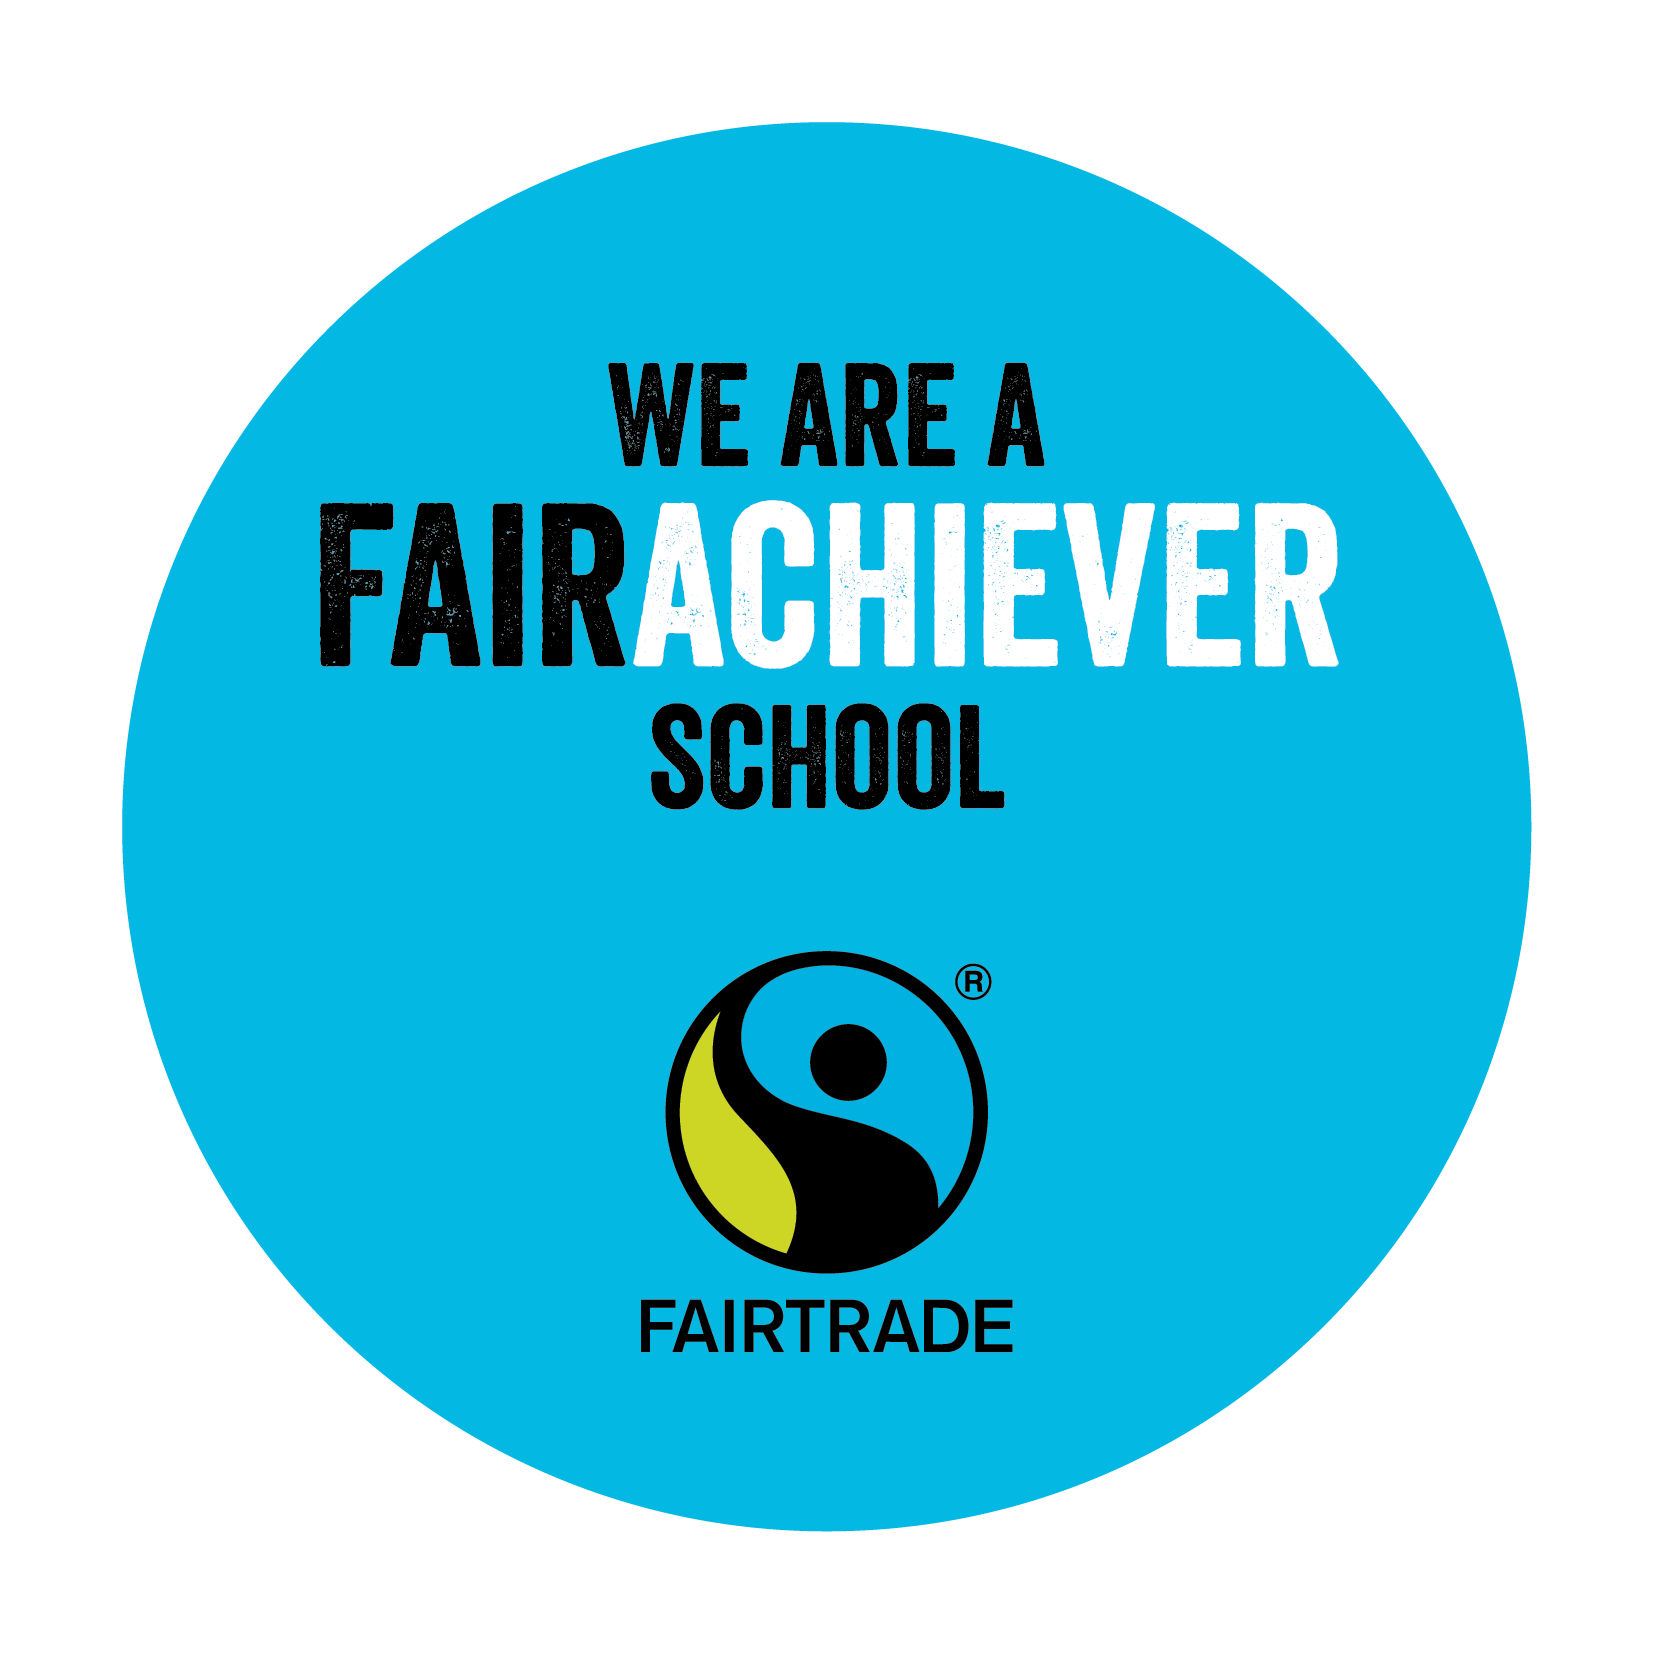 Fairtrade School Awards - Fairtrade Schools